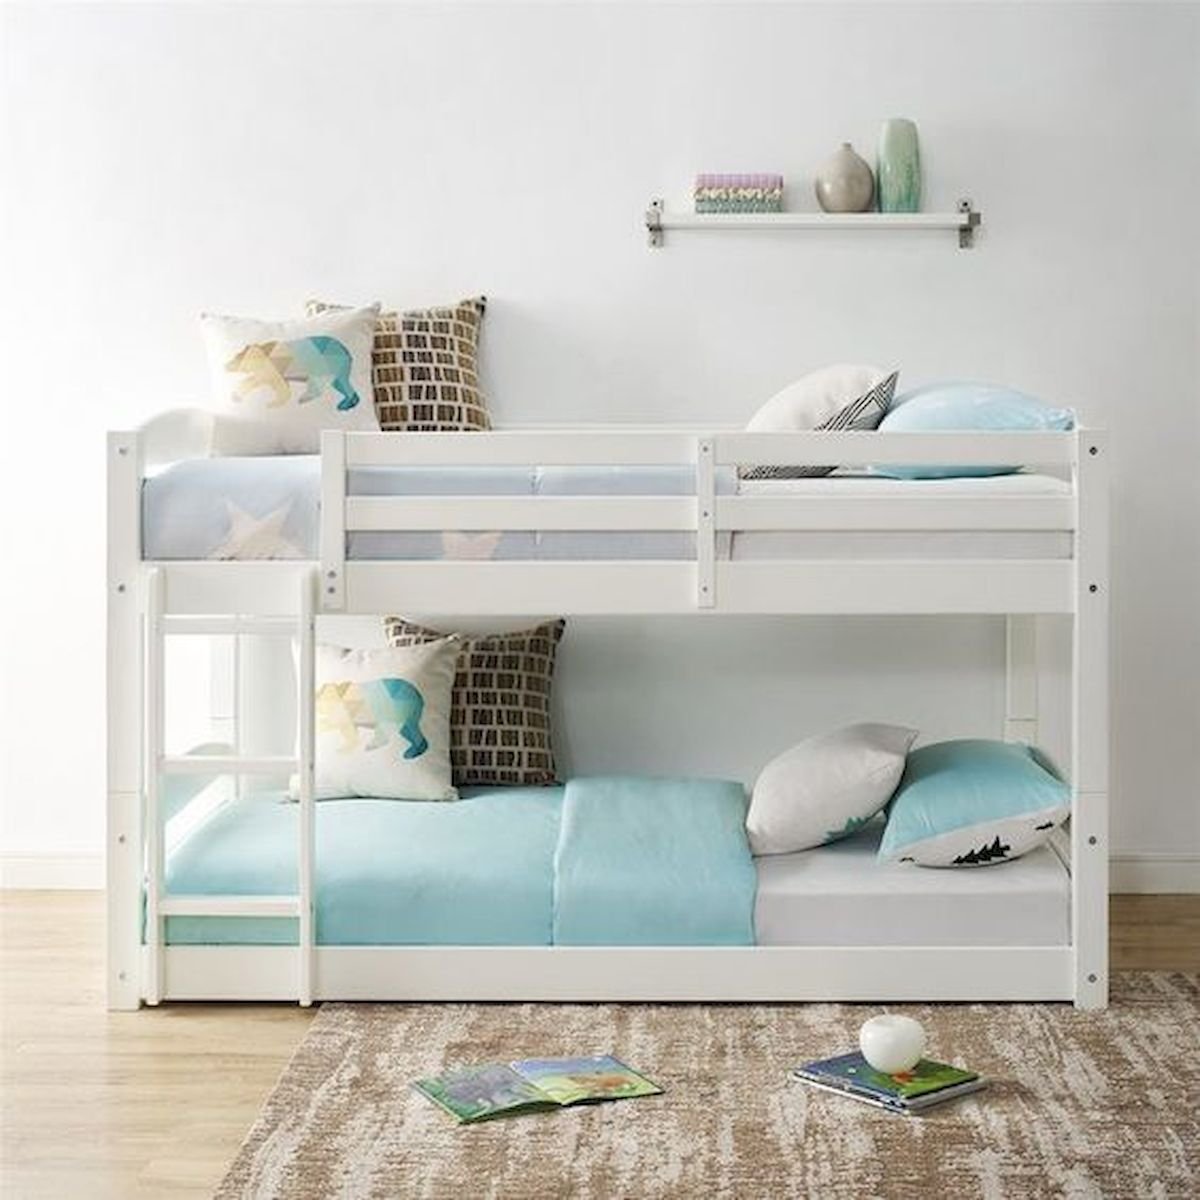 Двухуровневая кровать для детей